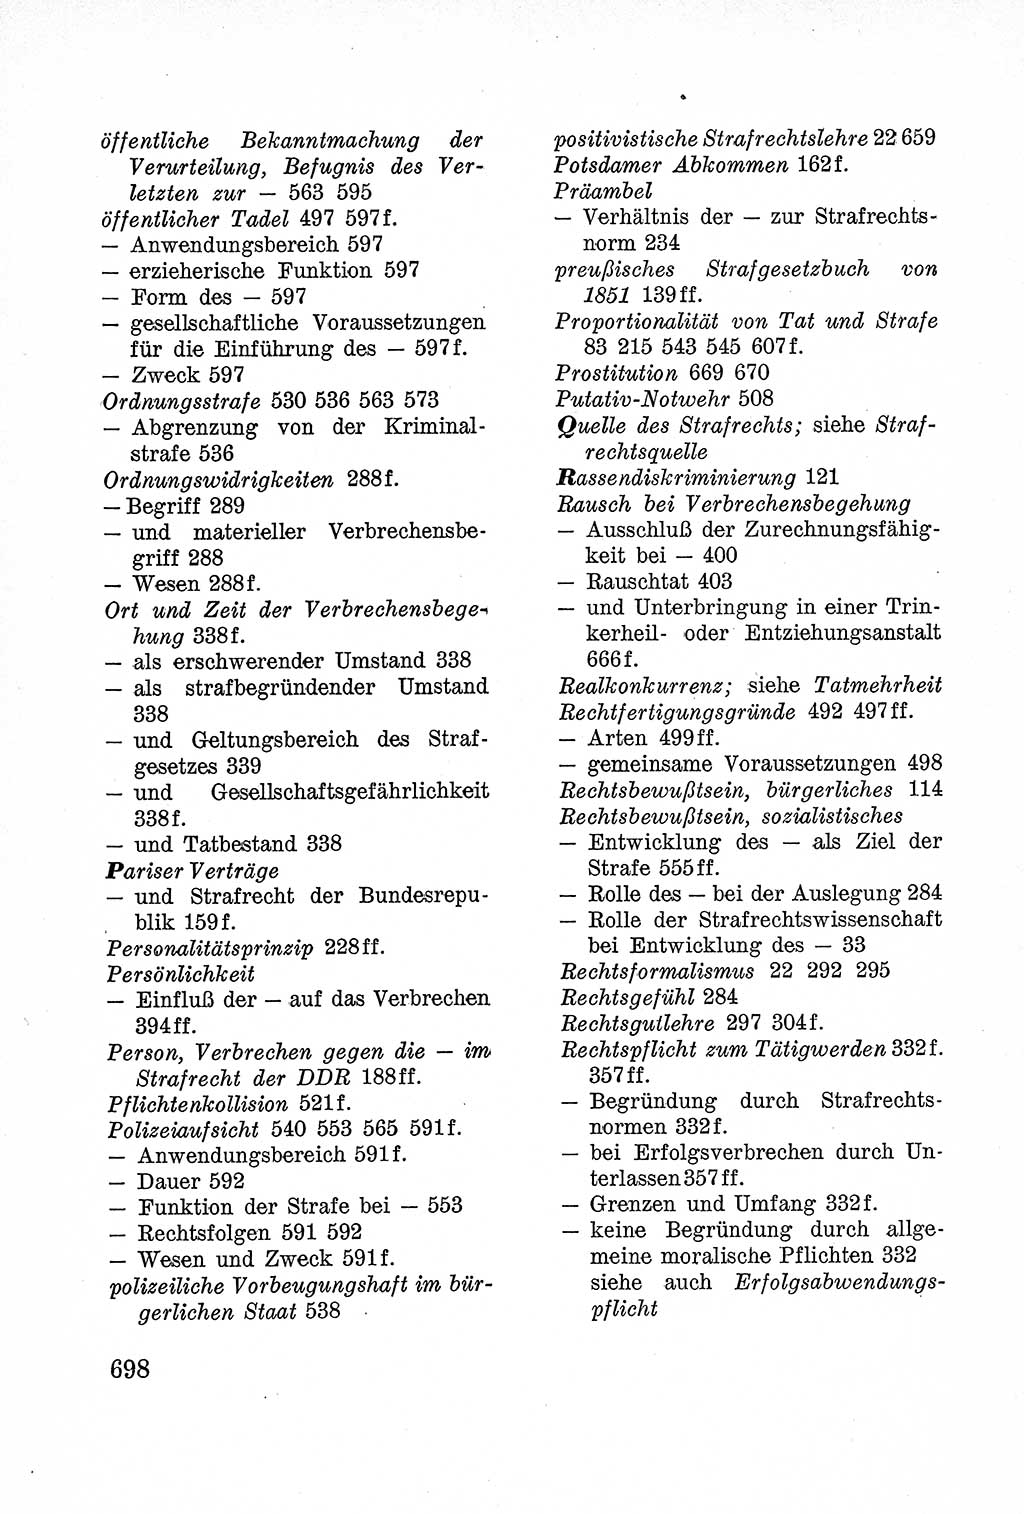 Lehrbuch des Strafrechts der Deutschen Demokratischen Republik (DDR), Allgemeiner Teil 1957, Seite 698 (Lb. Strafr. DDR AT 1957, S. 698)